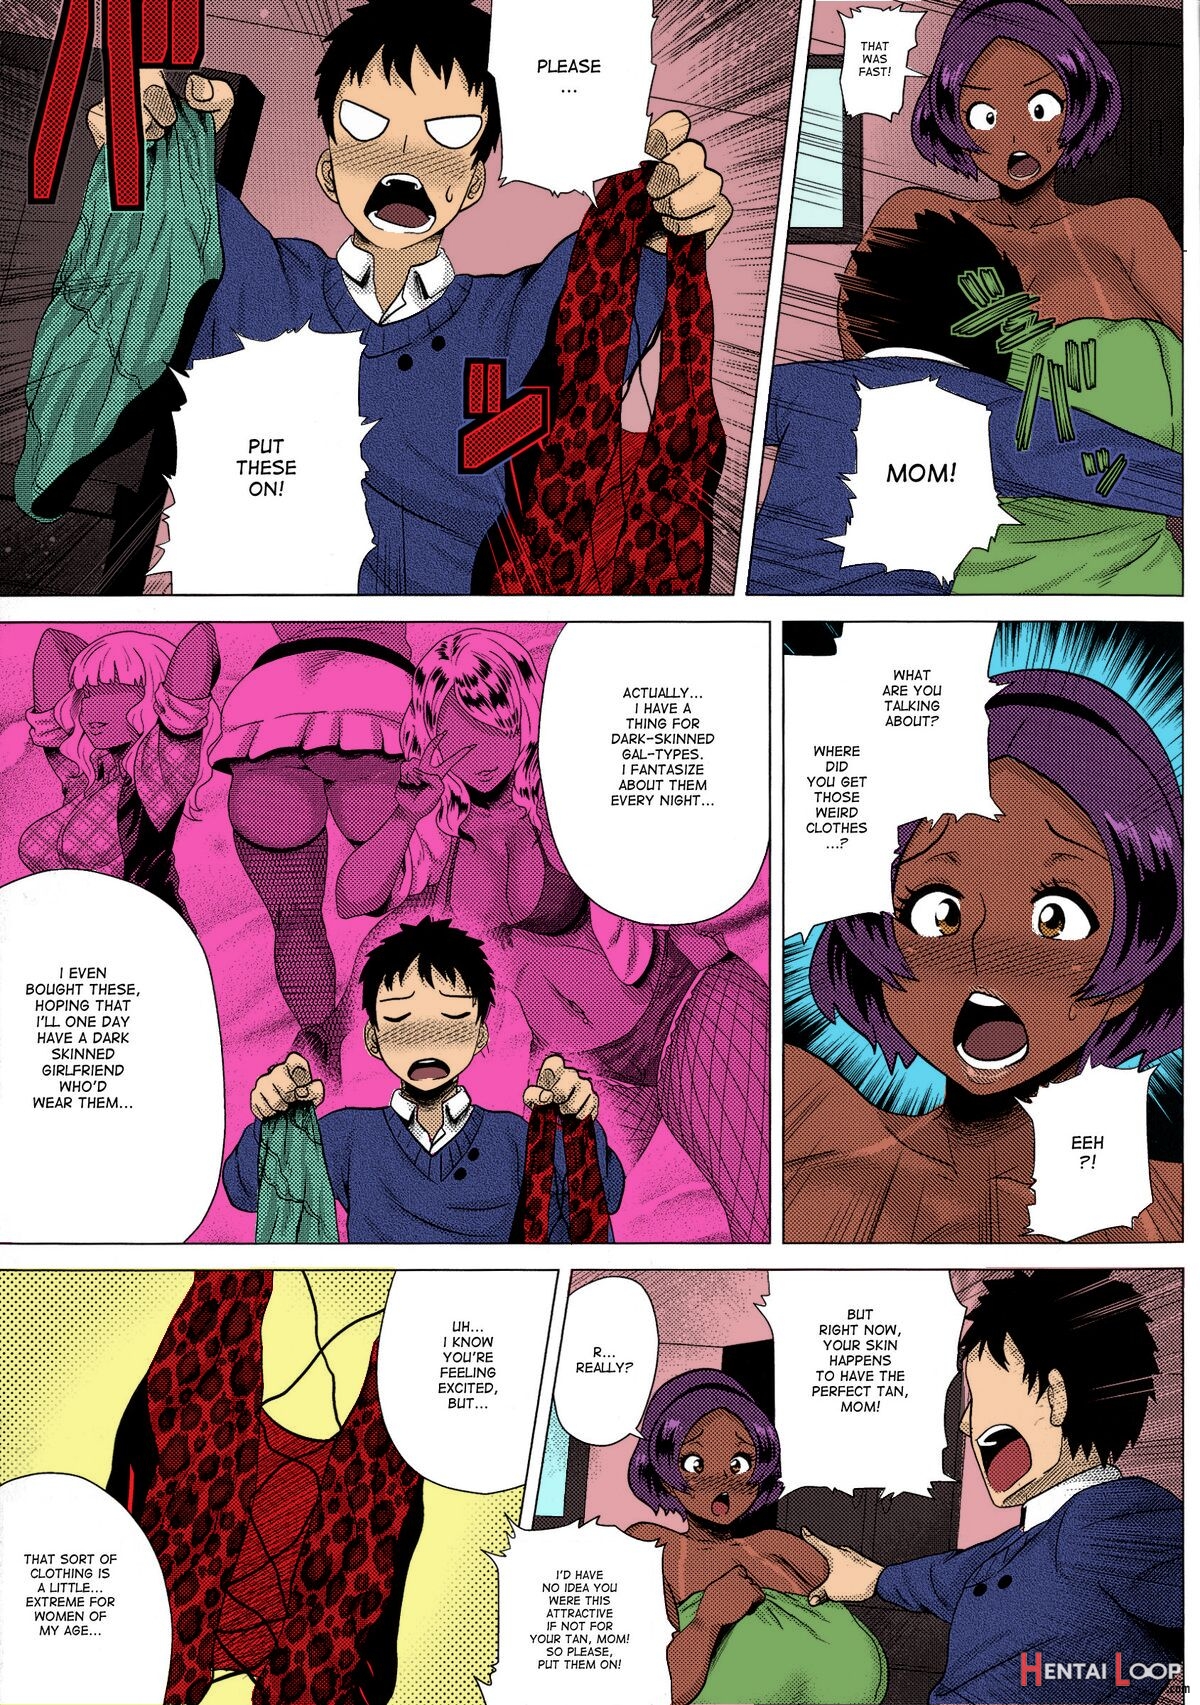 Juku Gal Mama Yukie – Colorized page 3